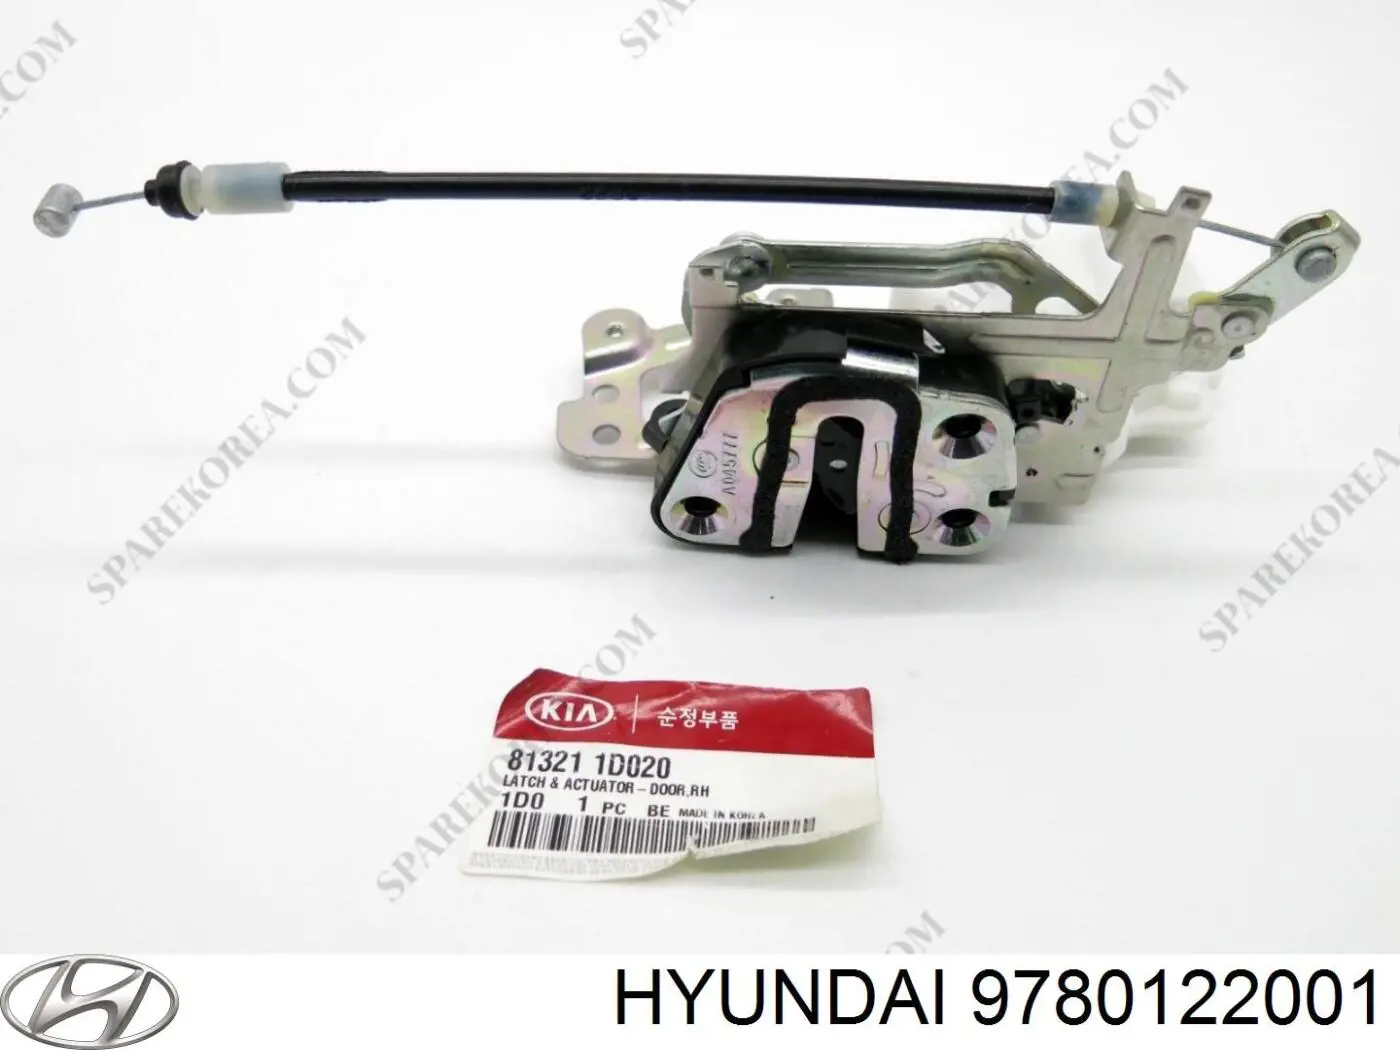 9780122001 Hyundai/Kia filtro deshidratador